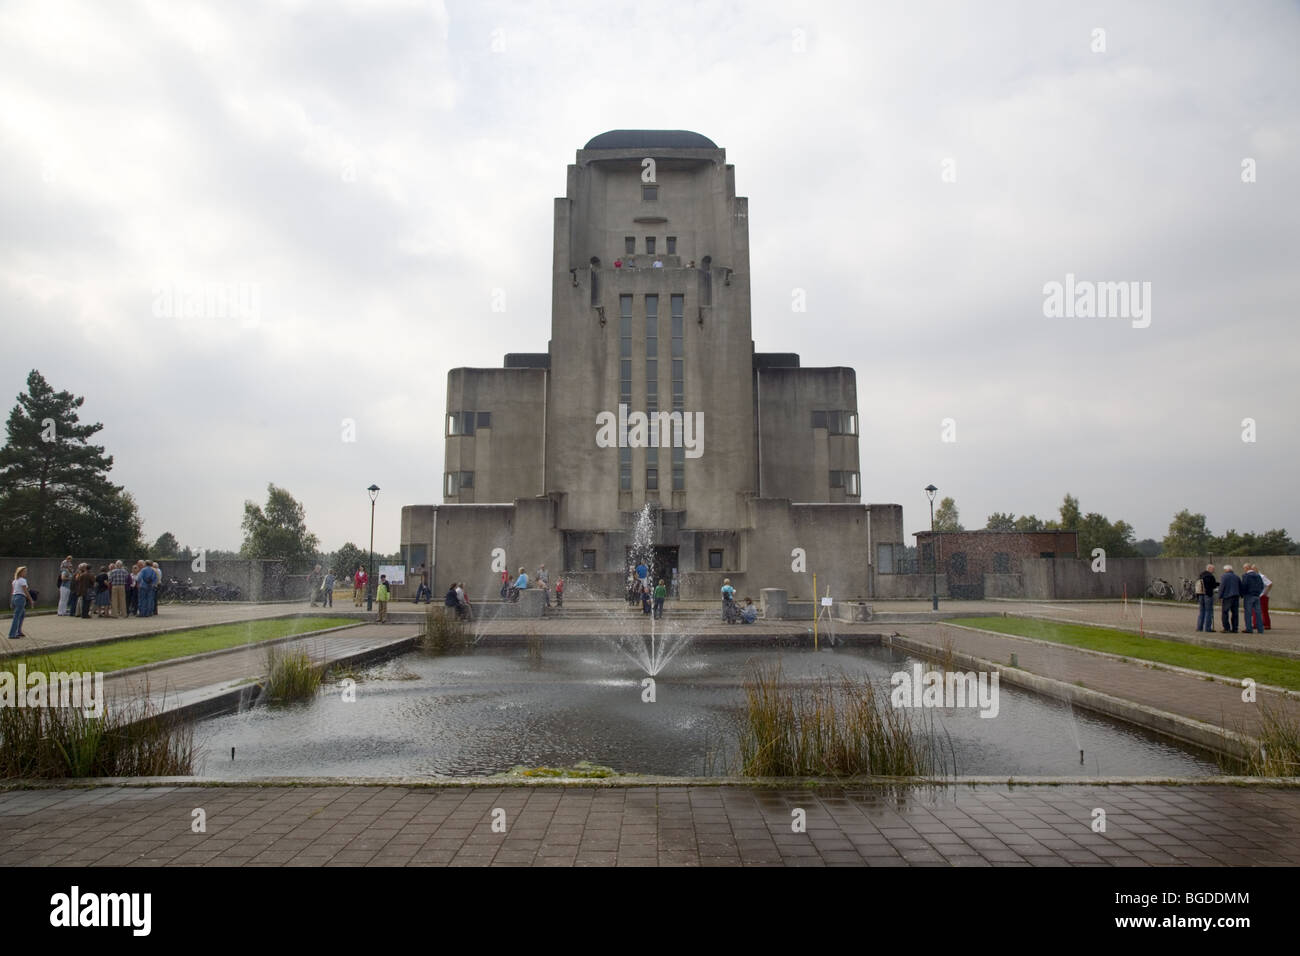 La Catedral como edificio monumental de la antigua Radio Kootwijk, Gelderland, Países Bajos Foto de stock